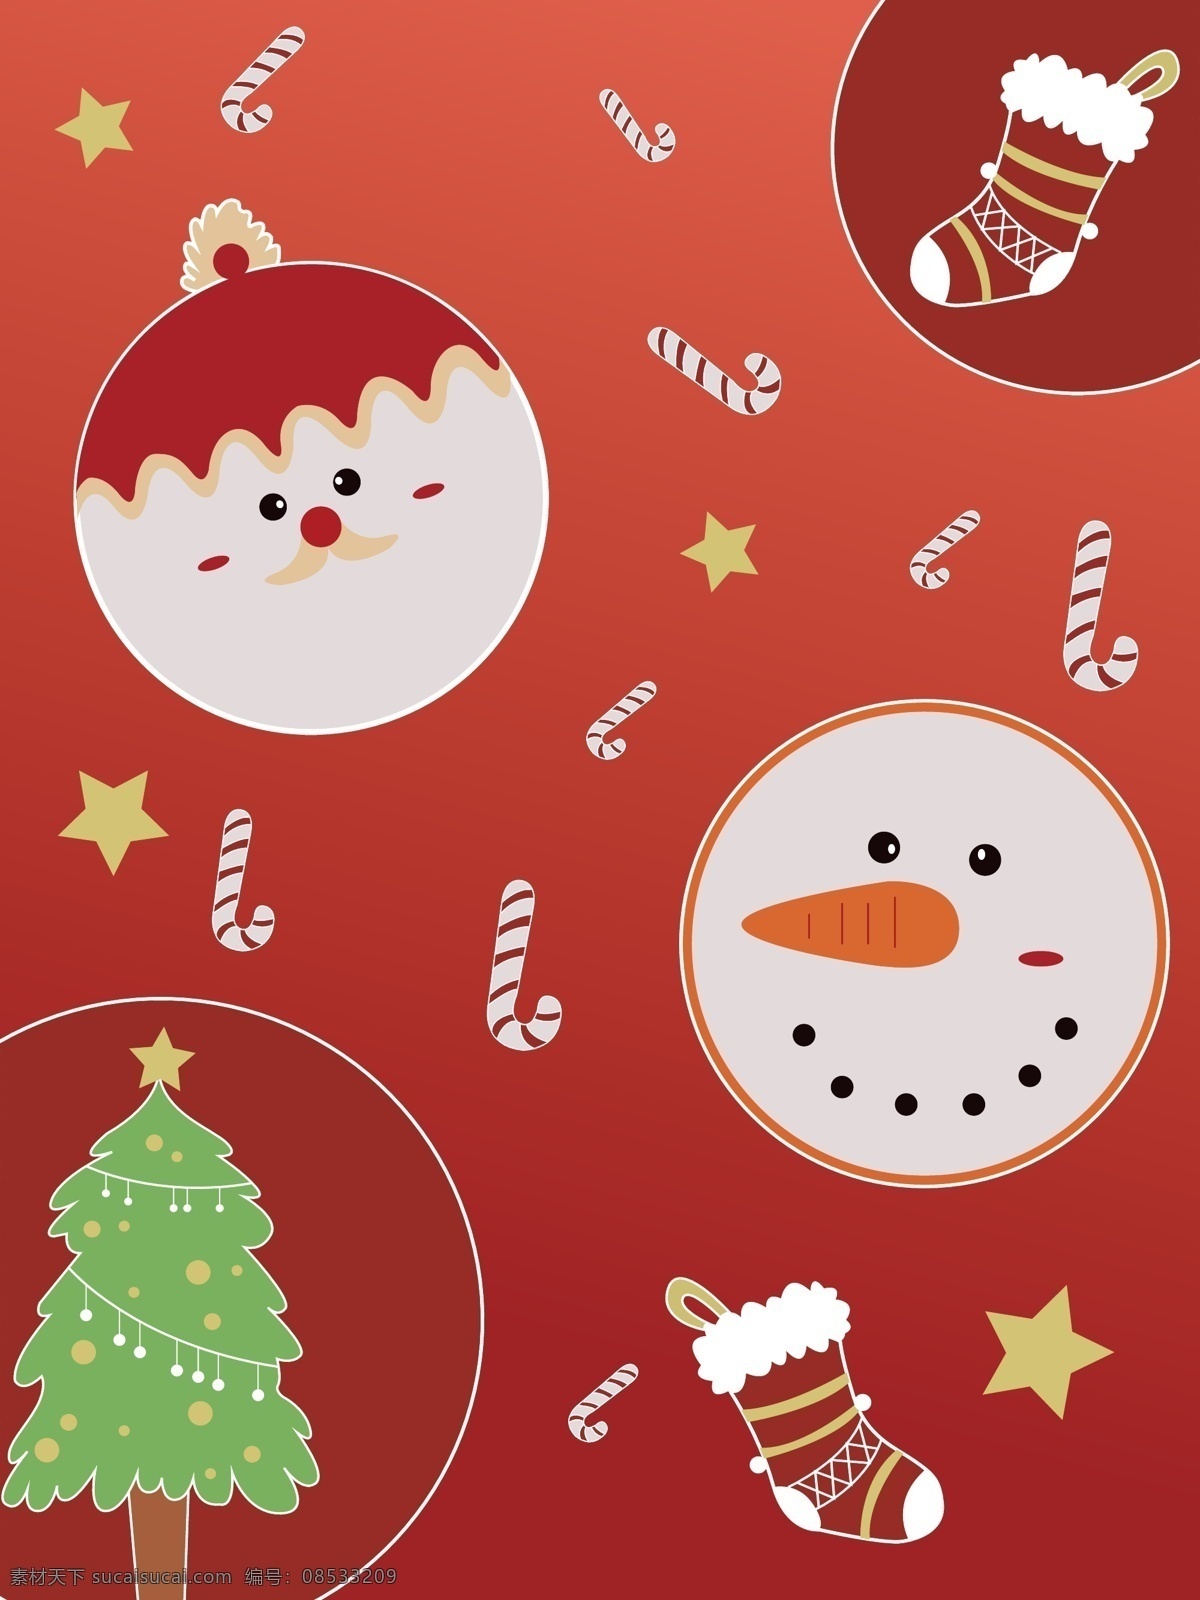 全 原创 圣诞 可爱 主题 元素 背景 圣诞树 圣诞老人 红色 雪人 圣诞元素